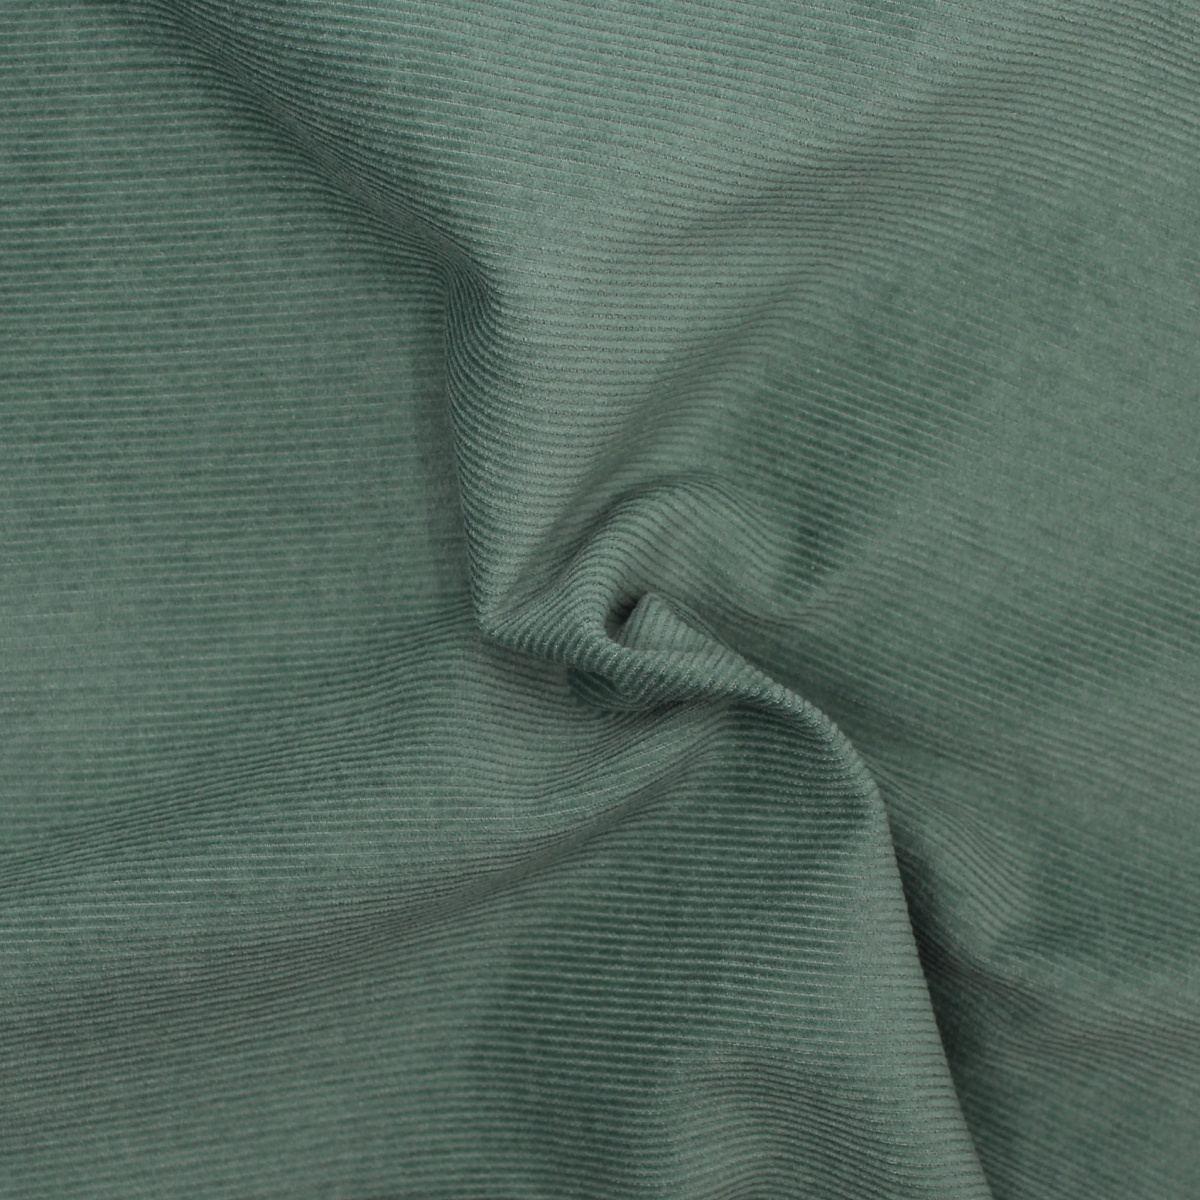 Tissus velours milleraies de coton organique hiver coloris vert sauge